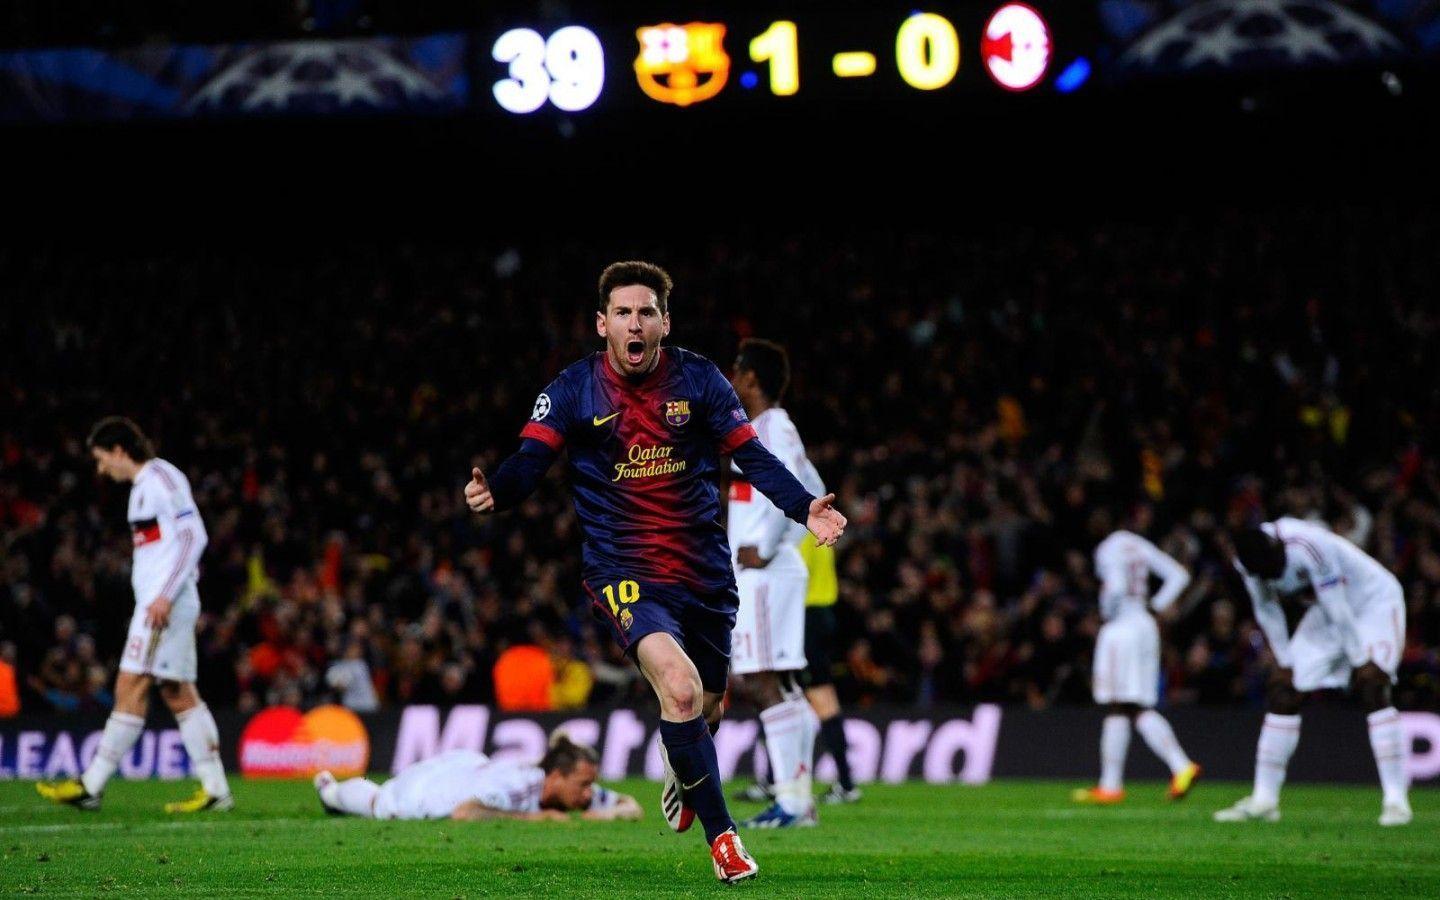 Lionel Messi Wallpaper 2015 Picture 5 HD Wallpaper. amagico